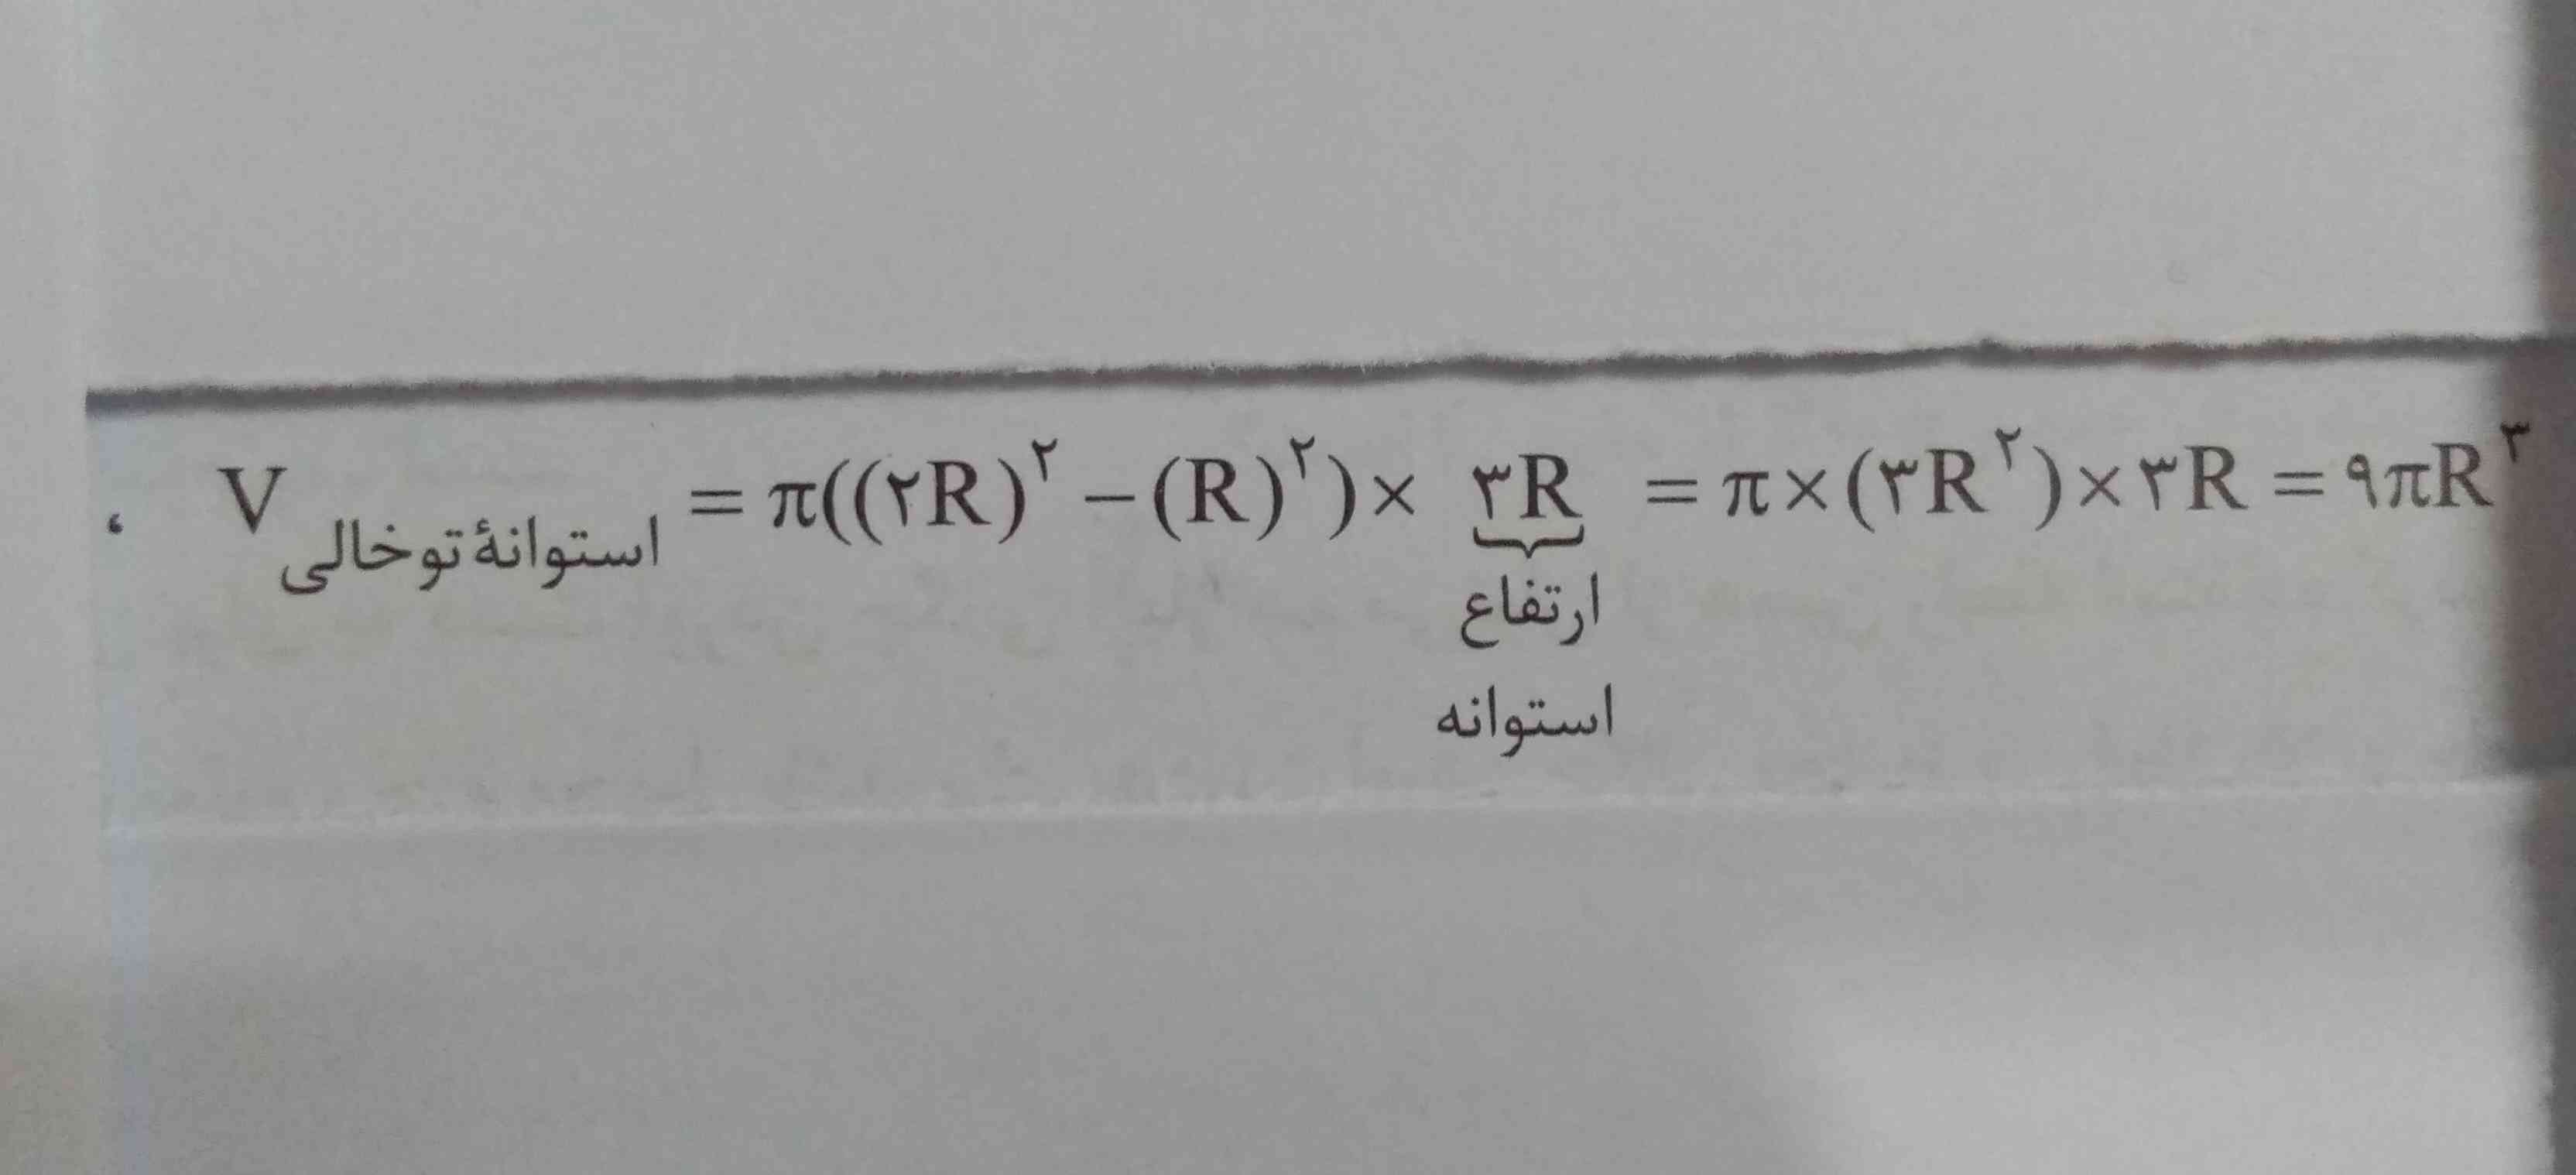 دوستان عزیز
یکی لطف کنه توضیح بده که چرا
 2R^2-R^2=3R^2?



پ ن:یکی از مثال های کتاب خیلی سبز دهم،بخش2،چگالی